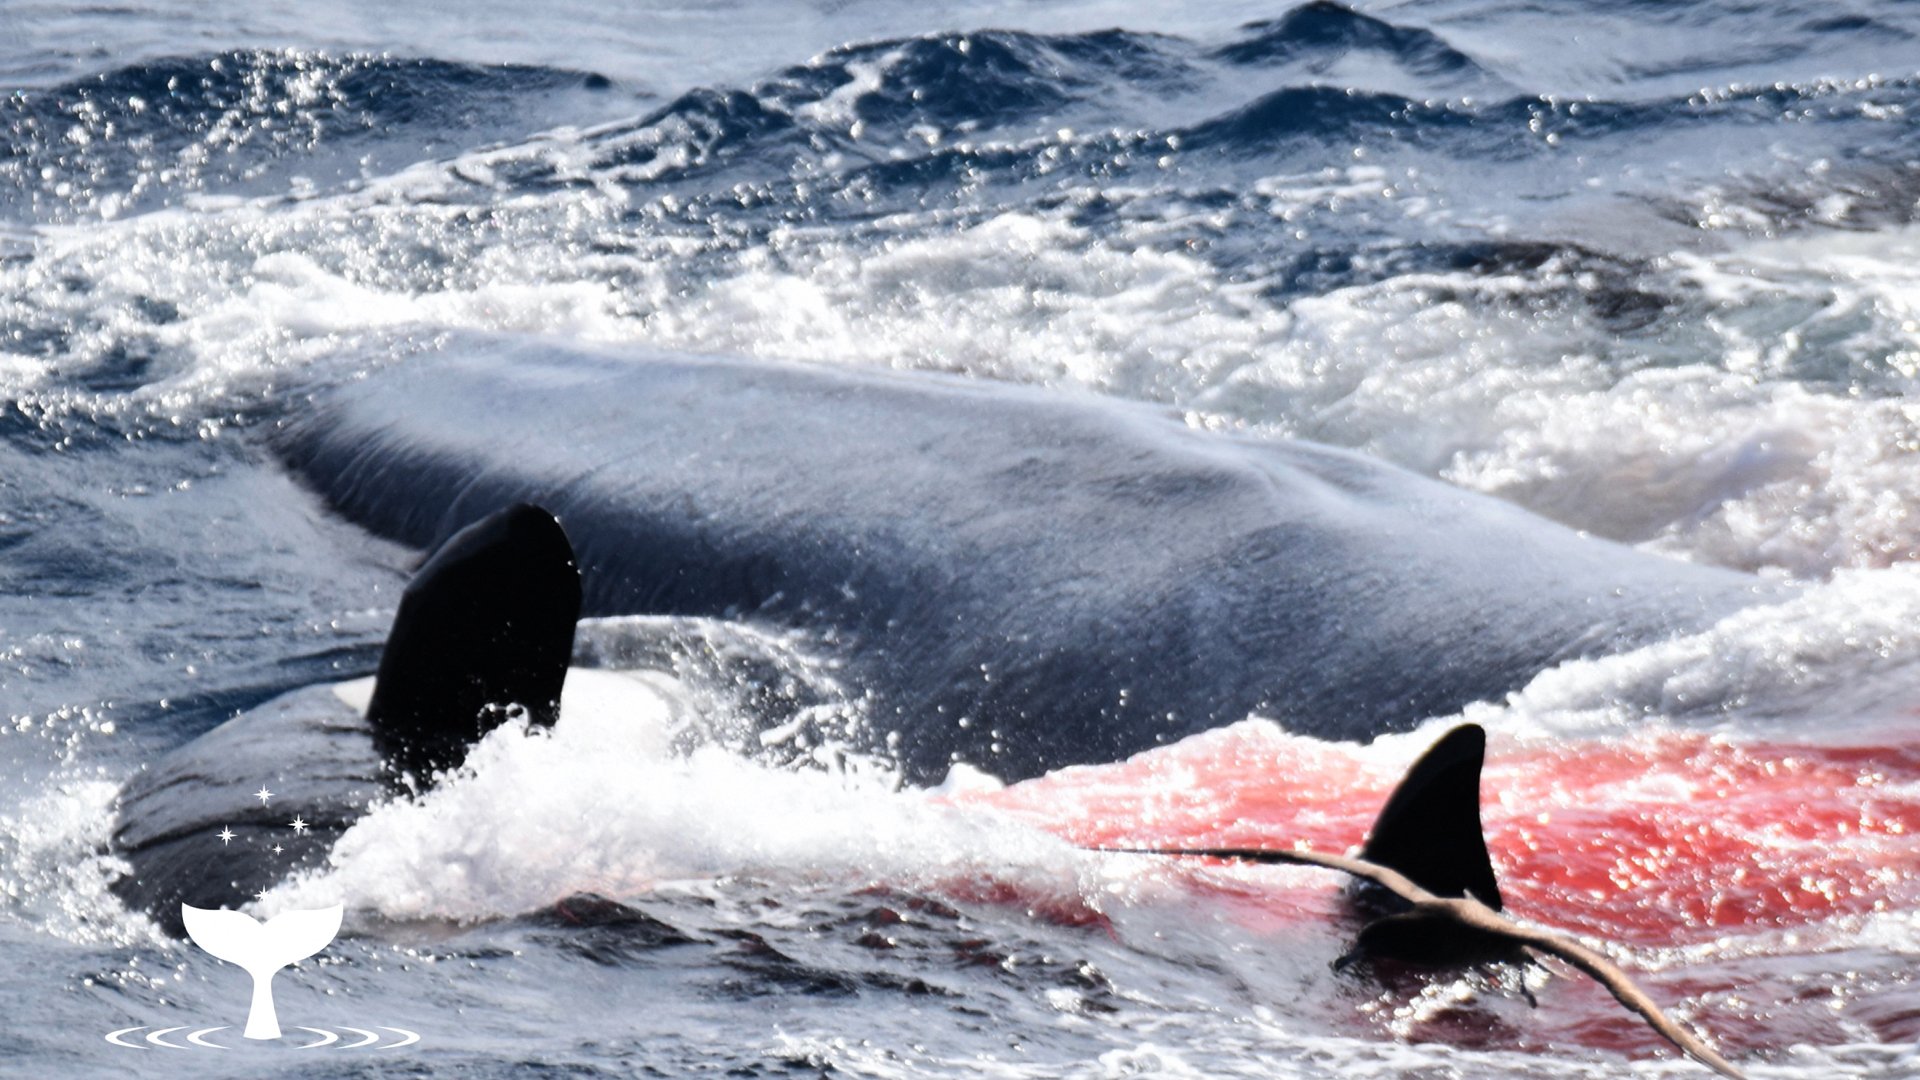 Касатки во льдах японии. Синий кит и Касатка. Самый большой кит Касатка. Касатка охотится. Стая касаток.